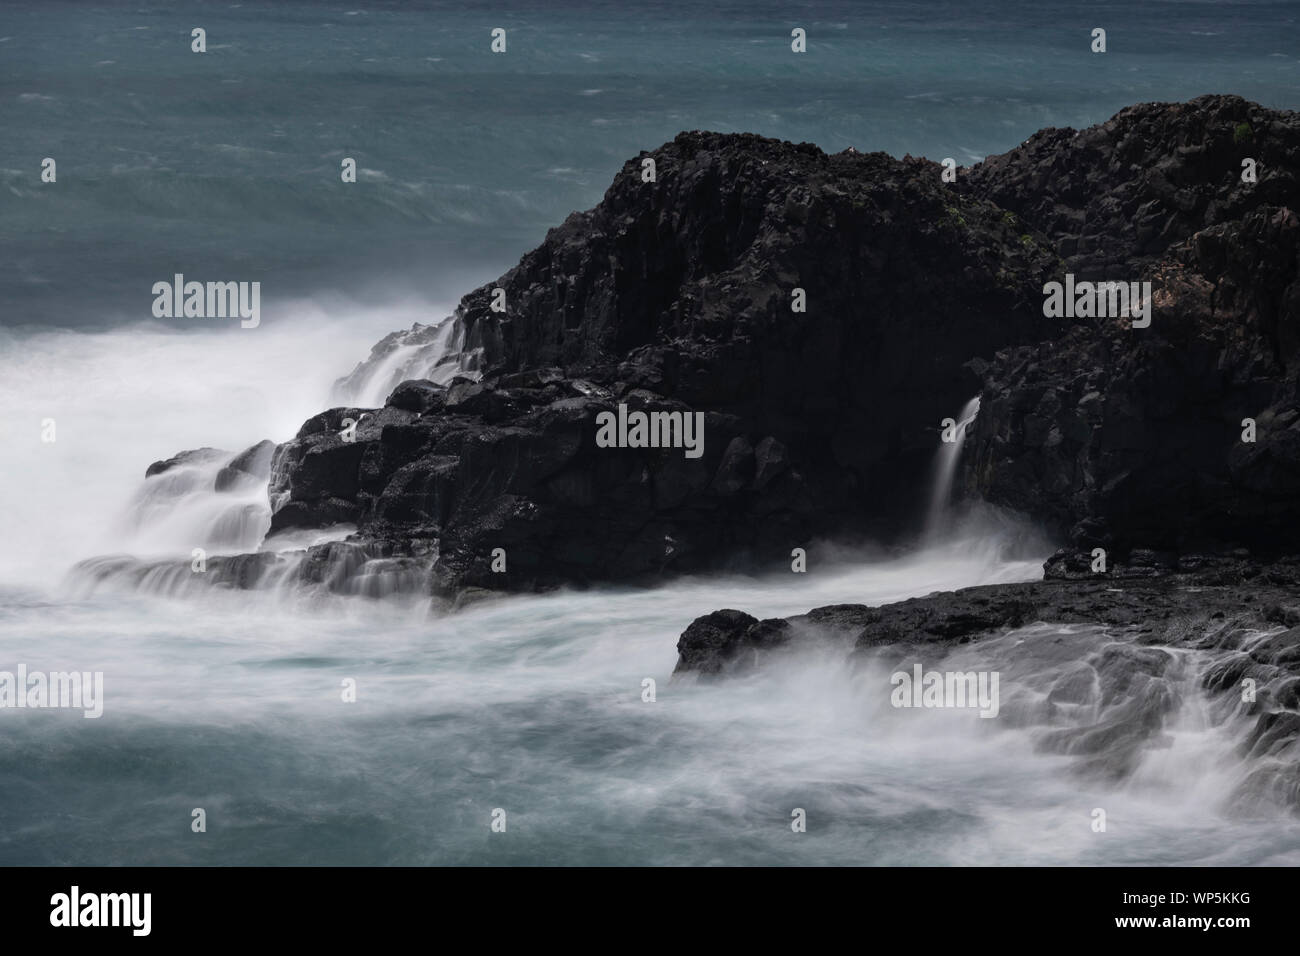 El mar embravecido con una imagen de obturador lento de la marea golpeando la lava volcánica litoral de Sao Miguel. La isla de São Miguel (Portugués para San Miguel, Portu Foto de stock